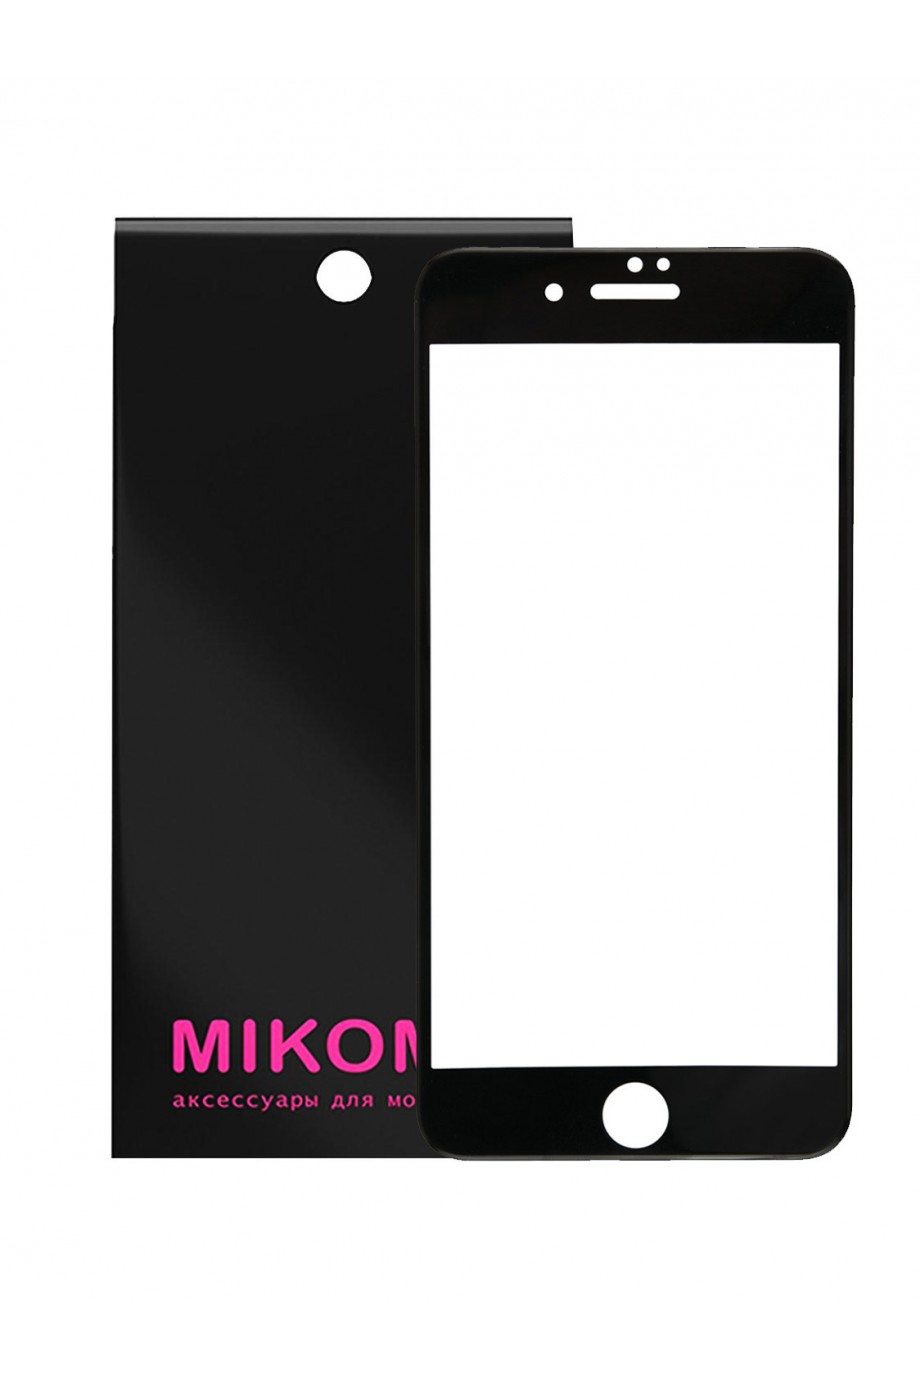 Защитное стекло 5D Mikomo для iPhone 6, черная рамка, полный клей